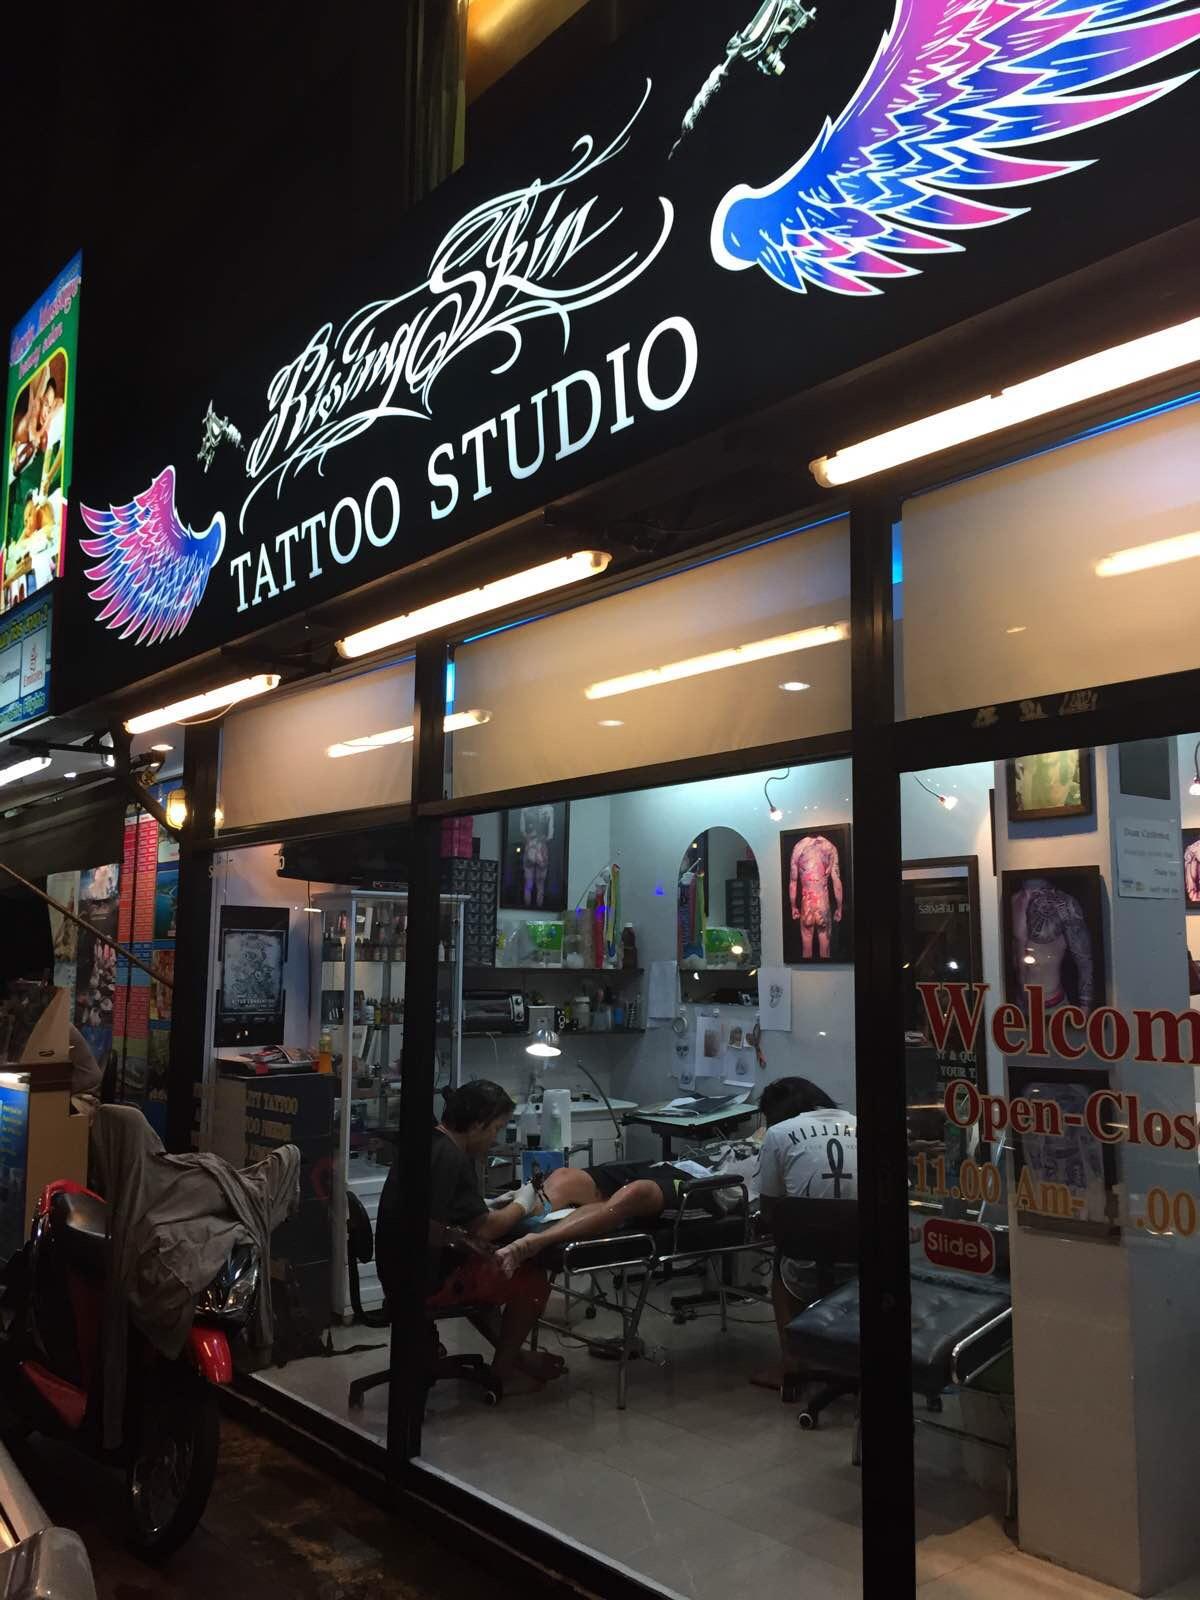 纹身店很多,大多是老外会去,这家店一个欧美人正在纹身